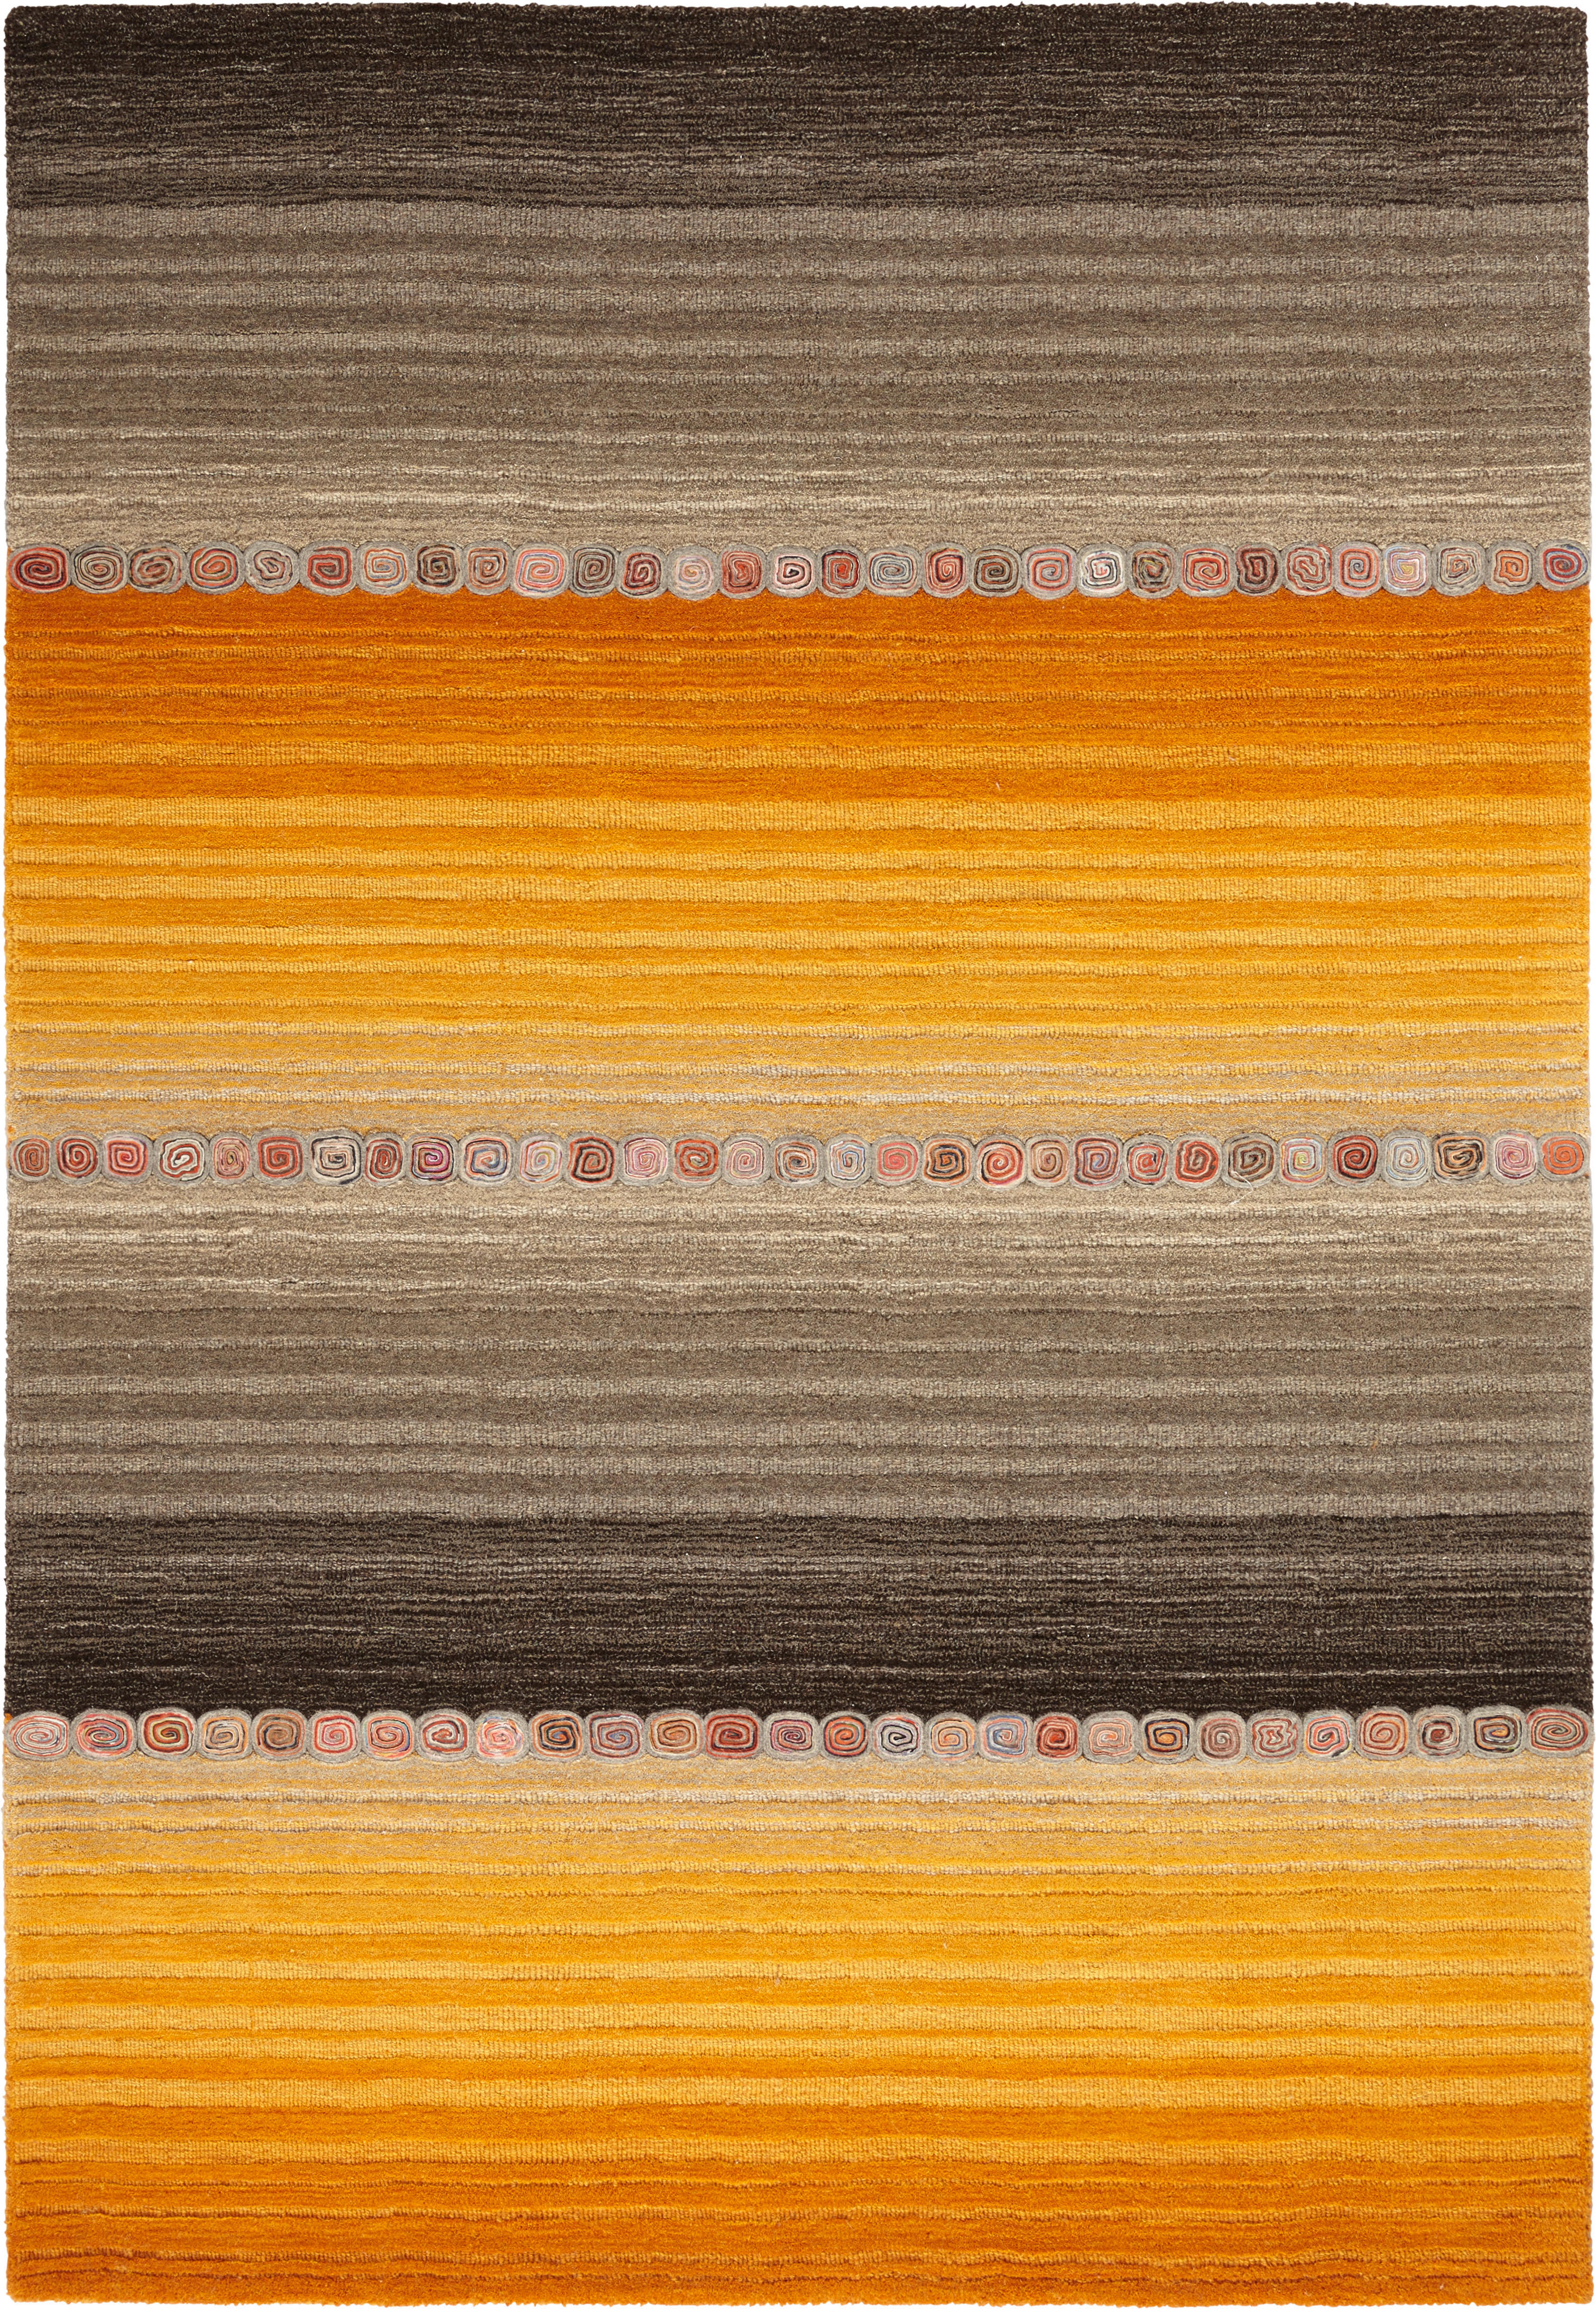 Cazaris ORIENTÁLNÍ KOBEREC, 80/300 cm, hnědá, oranžová - hnědá, oranžová